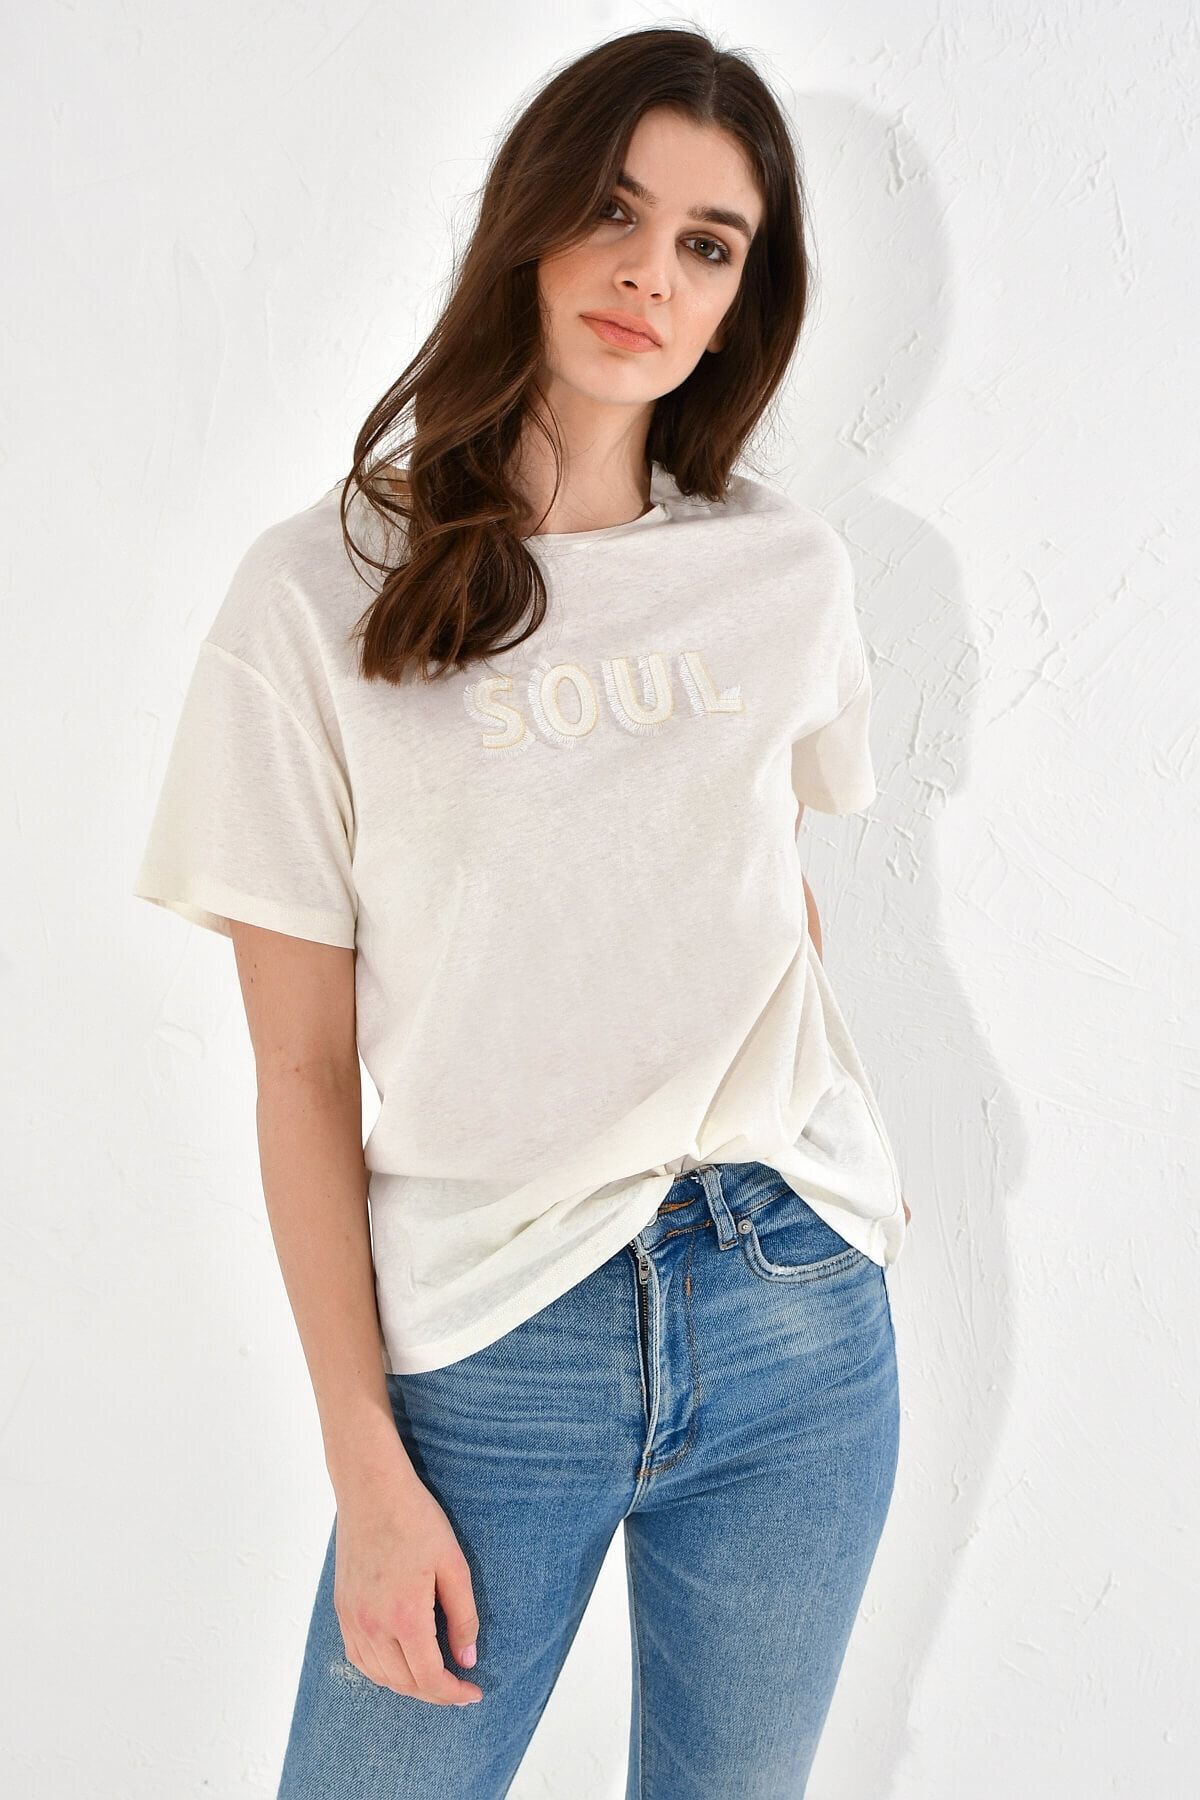 Hanna's Kadın Ekru Soul Nakışlı Basic T-shirt